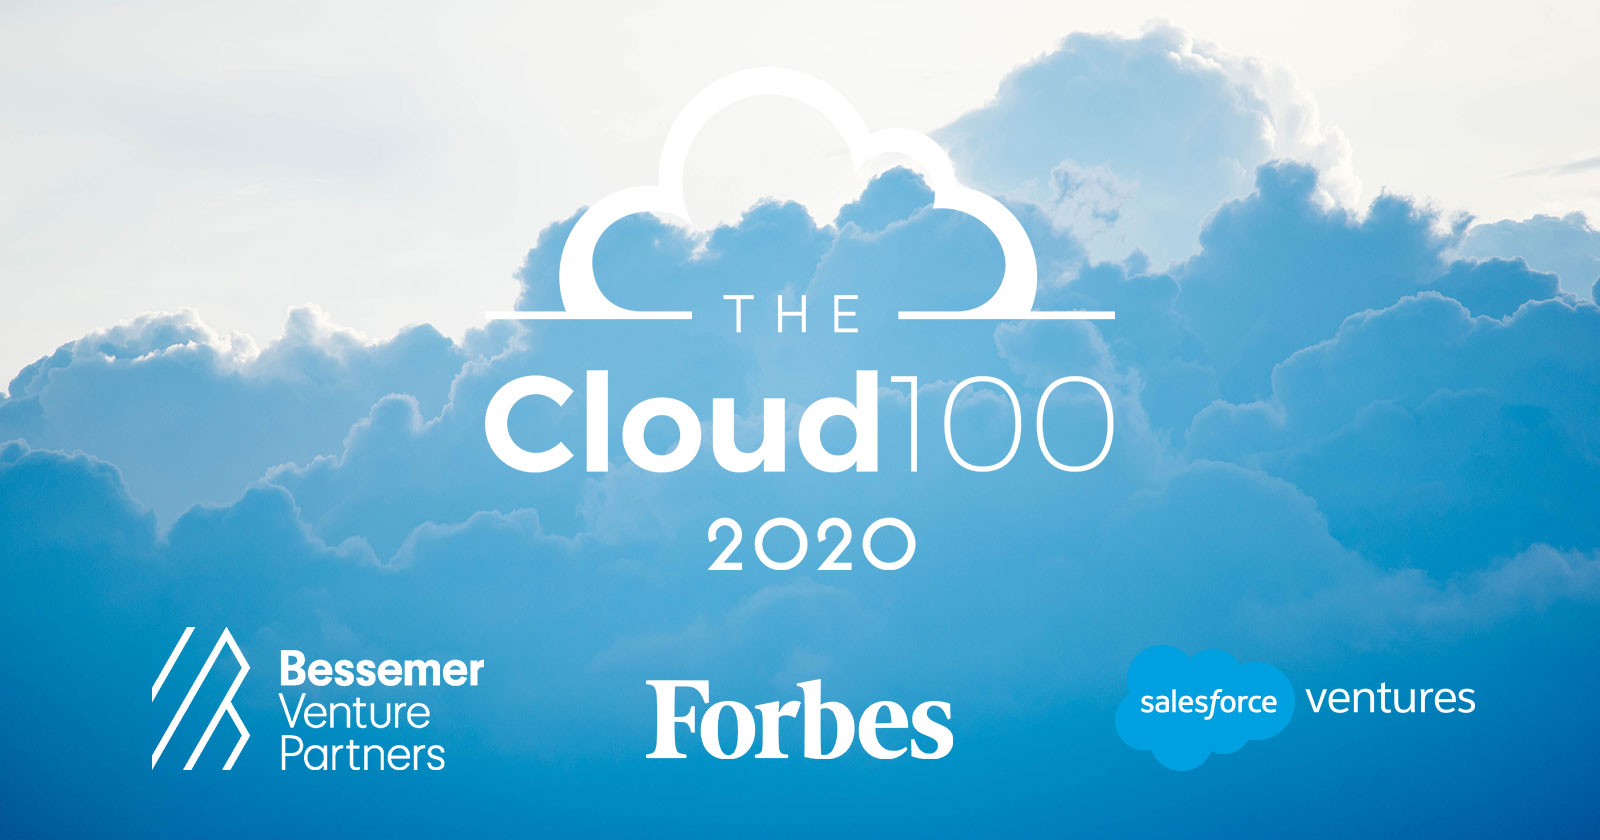 The Cloud 100 2020 Bessemer Venture Partners Forbes Salesforce Ventures